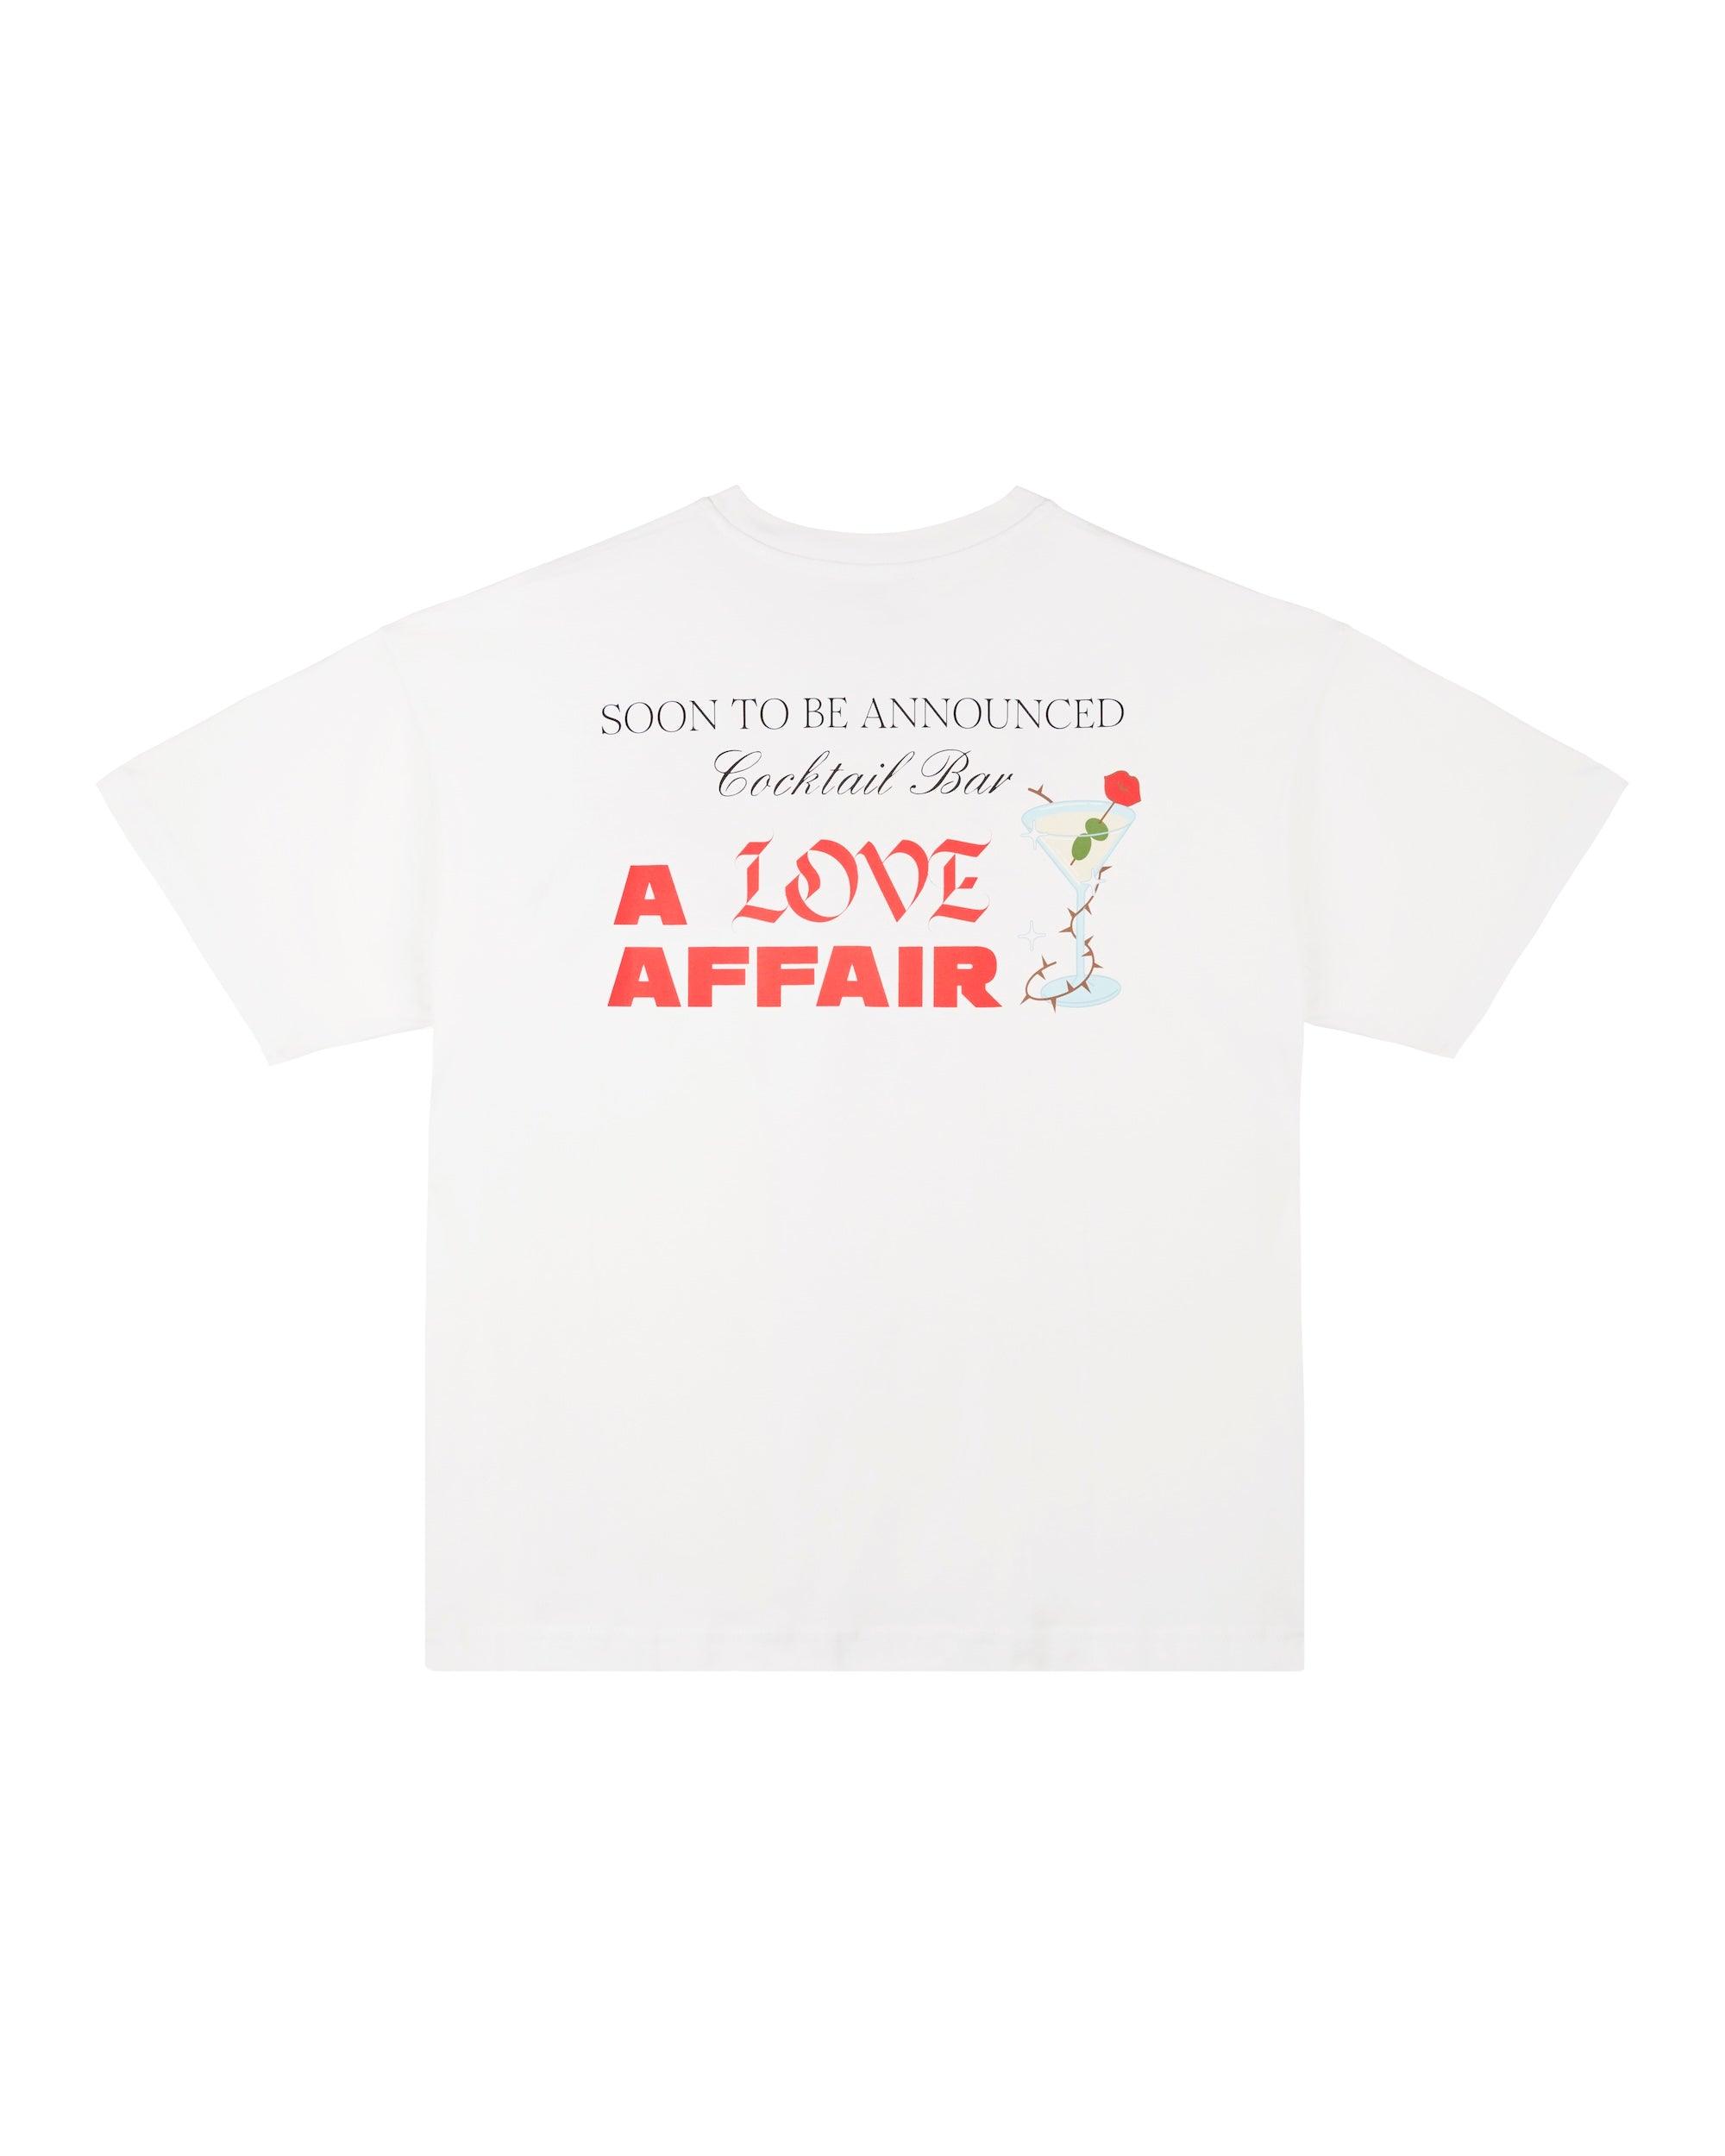 A Love Affair T-Shirt - SOON TO BE ANNOUNCED